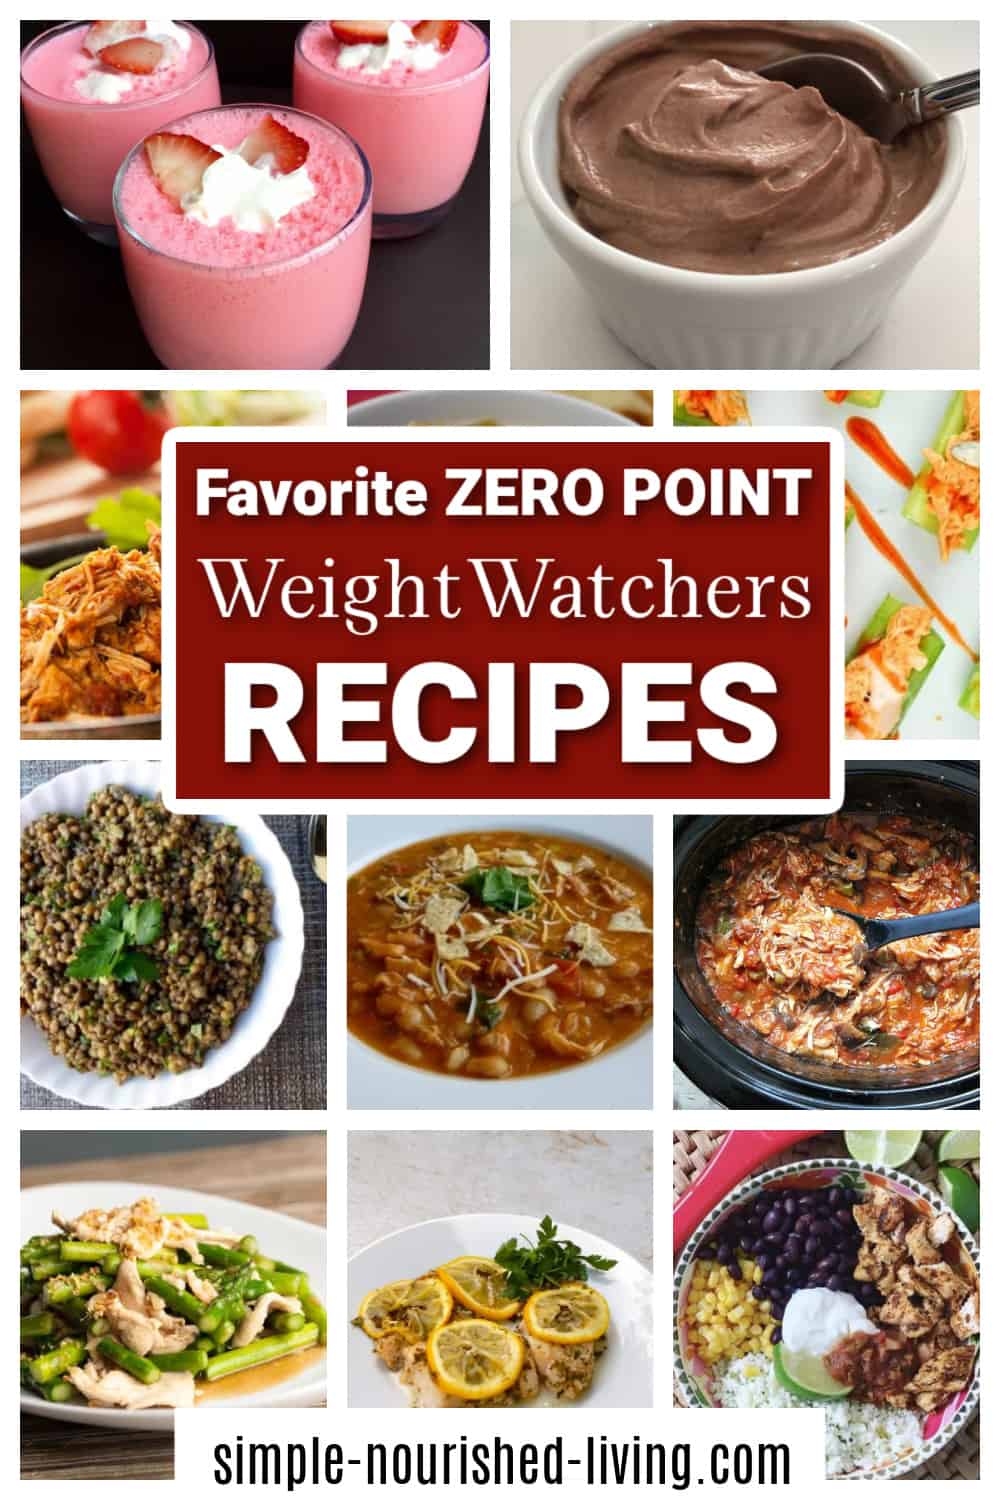 WW Zero Point Recipes Food Photo Collage Pinterest PIN